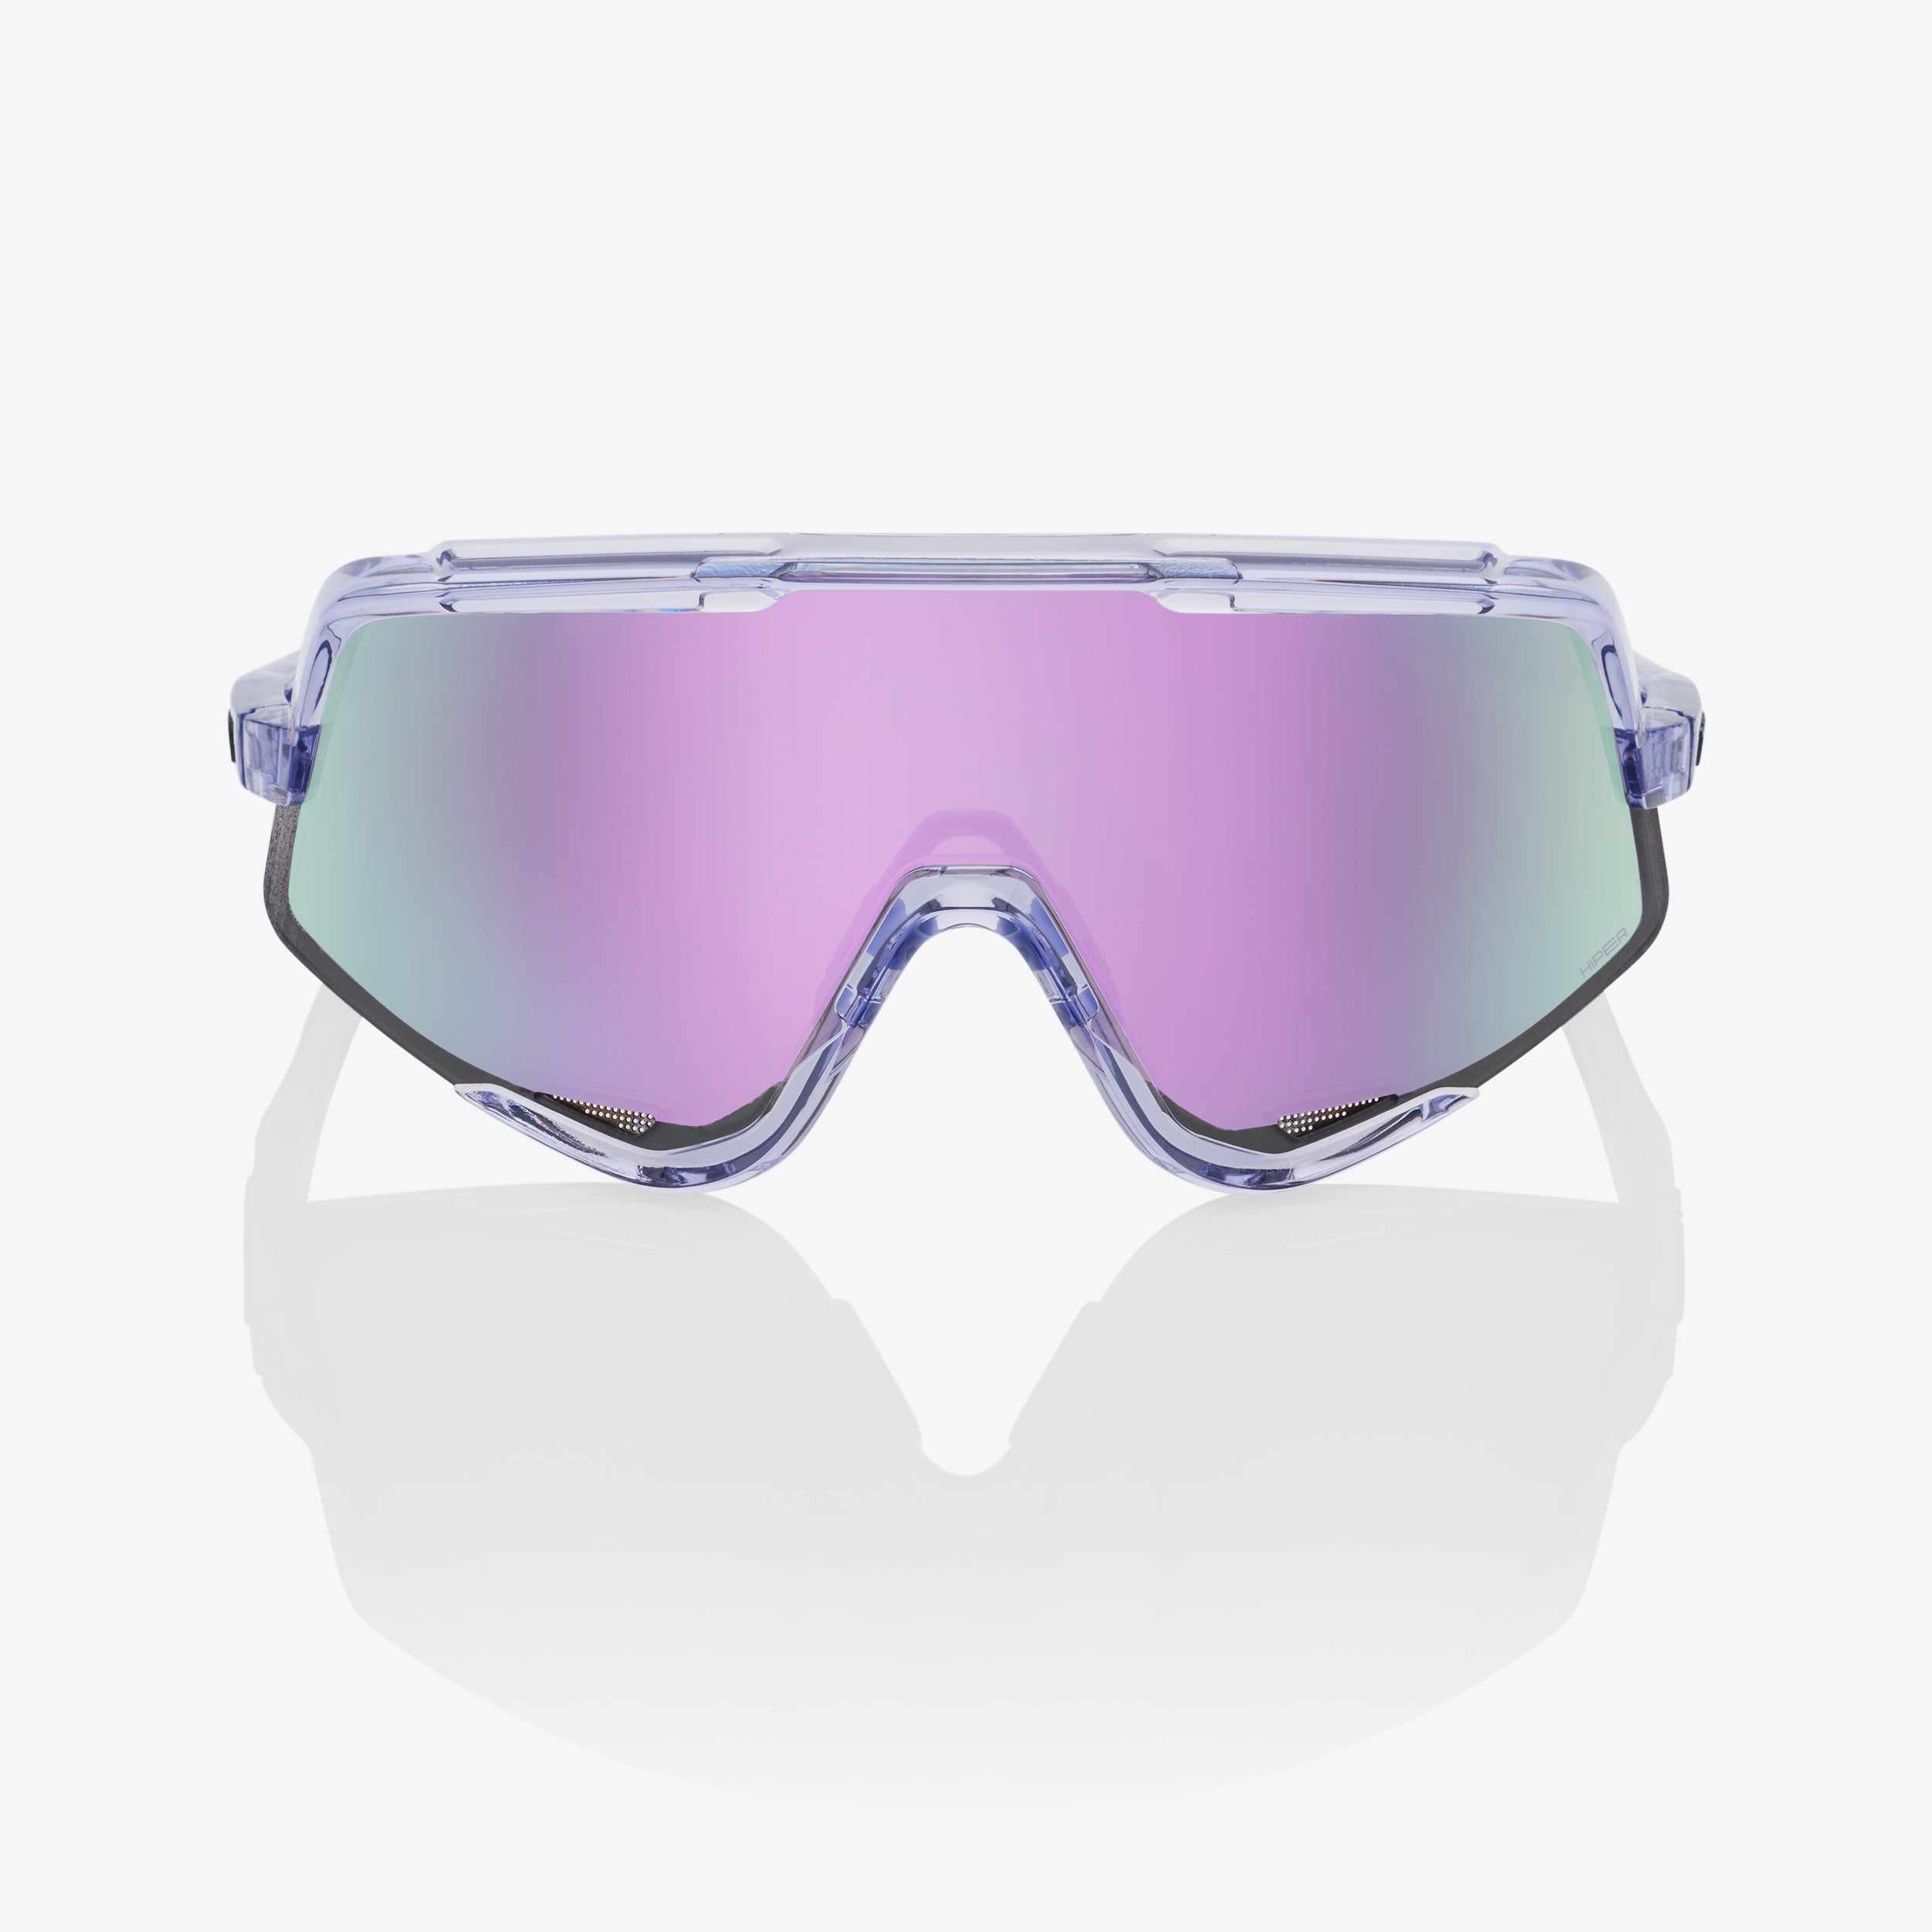 GLENDALE® - Polished Translucent Lavender - HiPER® Lavender Mirror Lens - Secondary